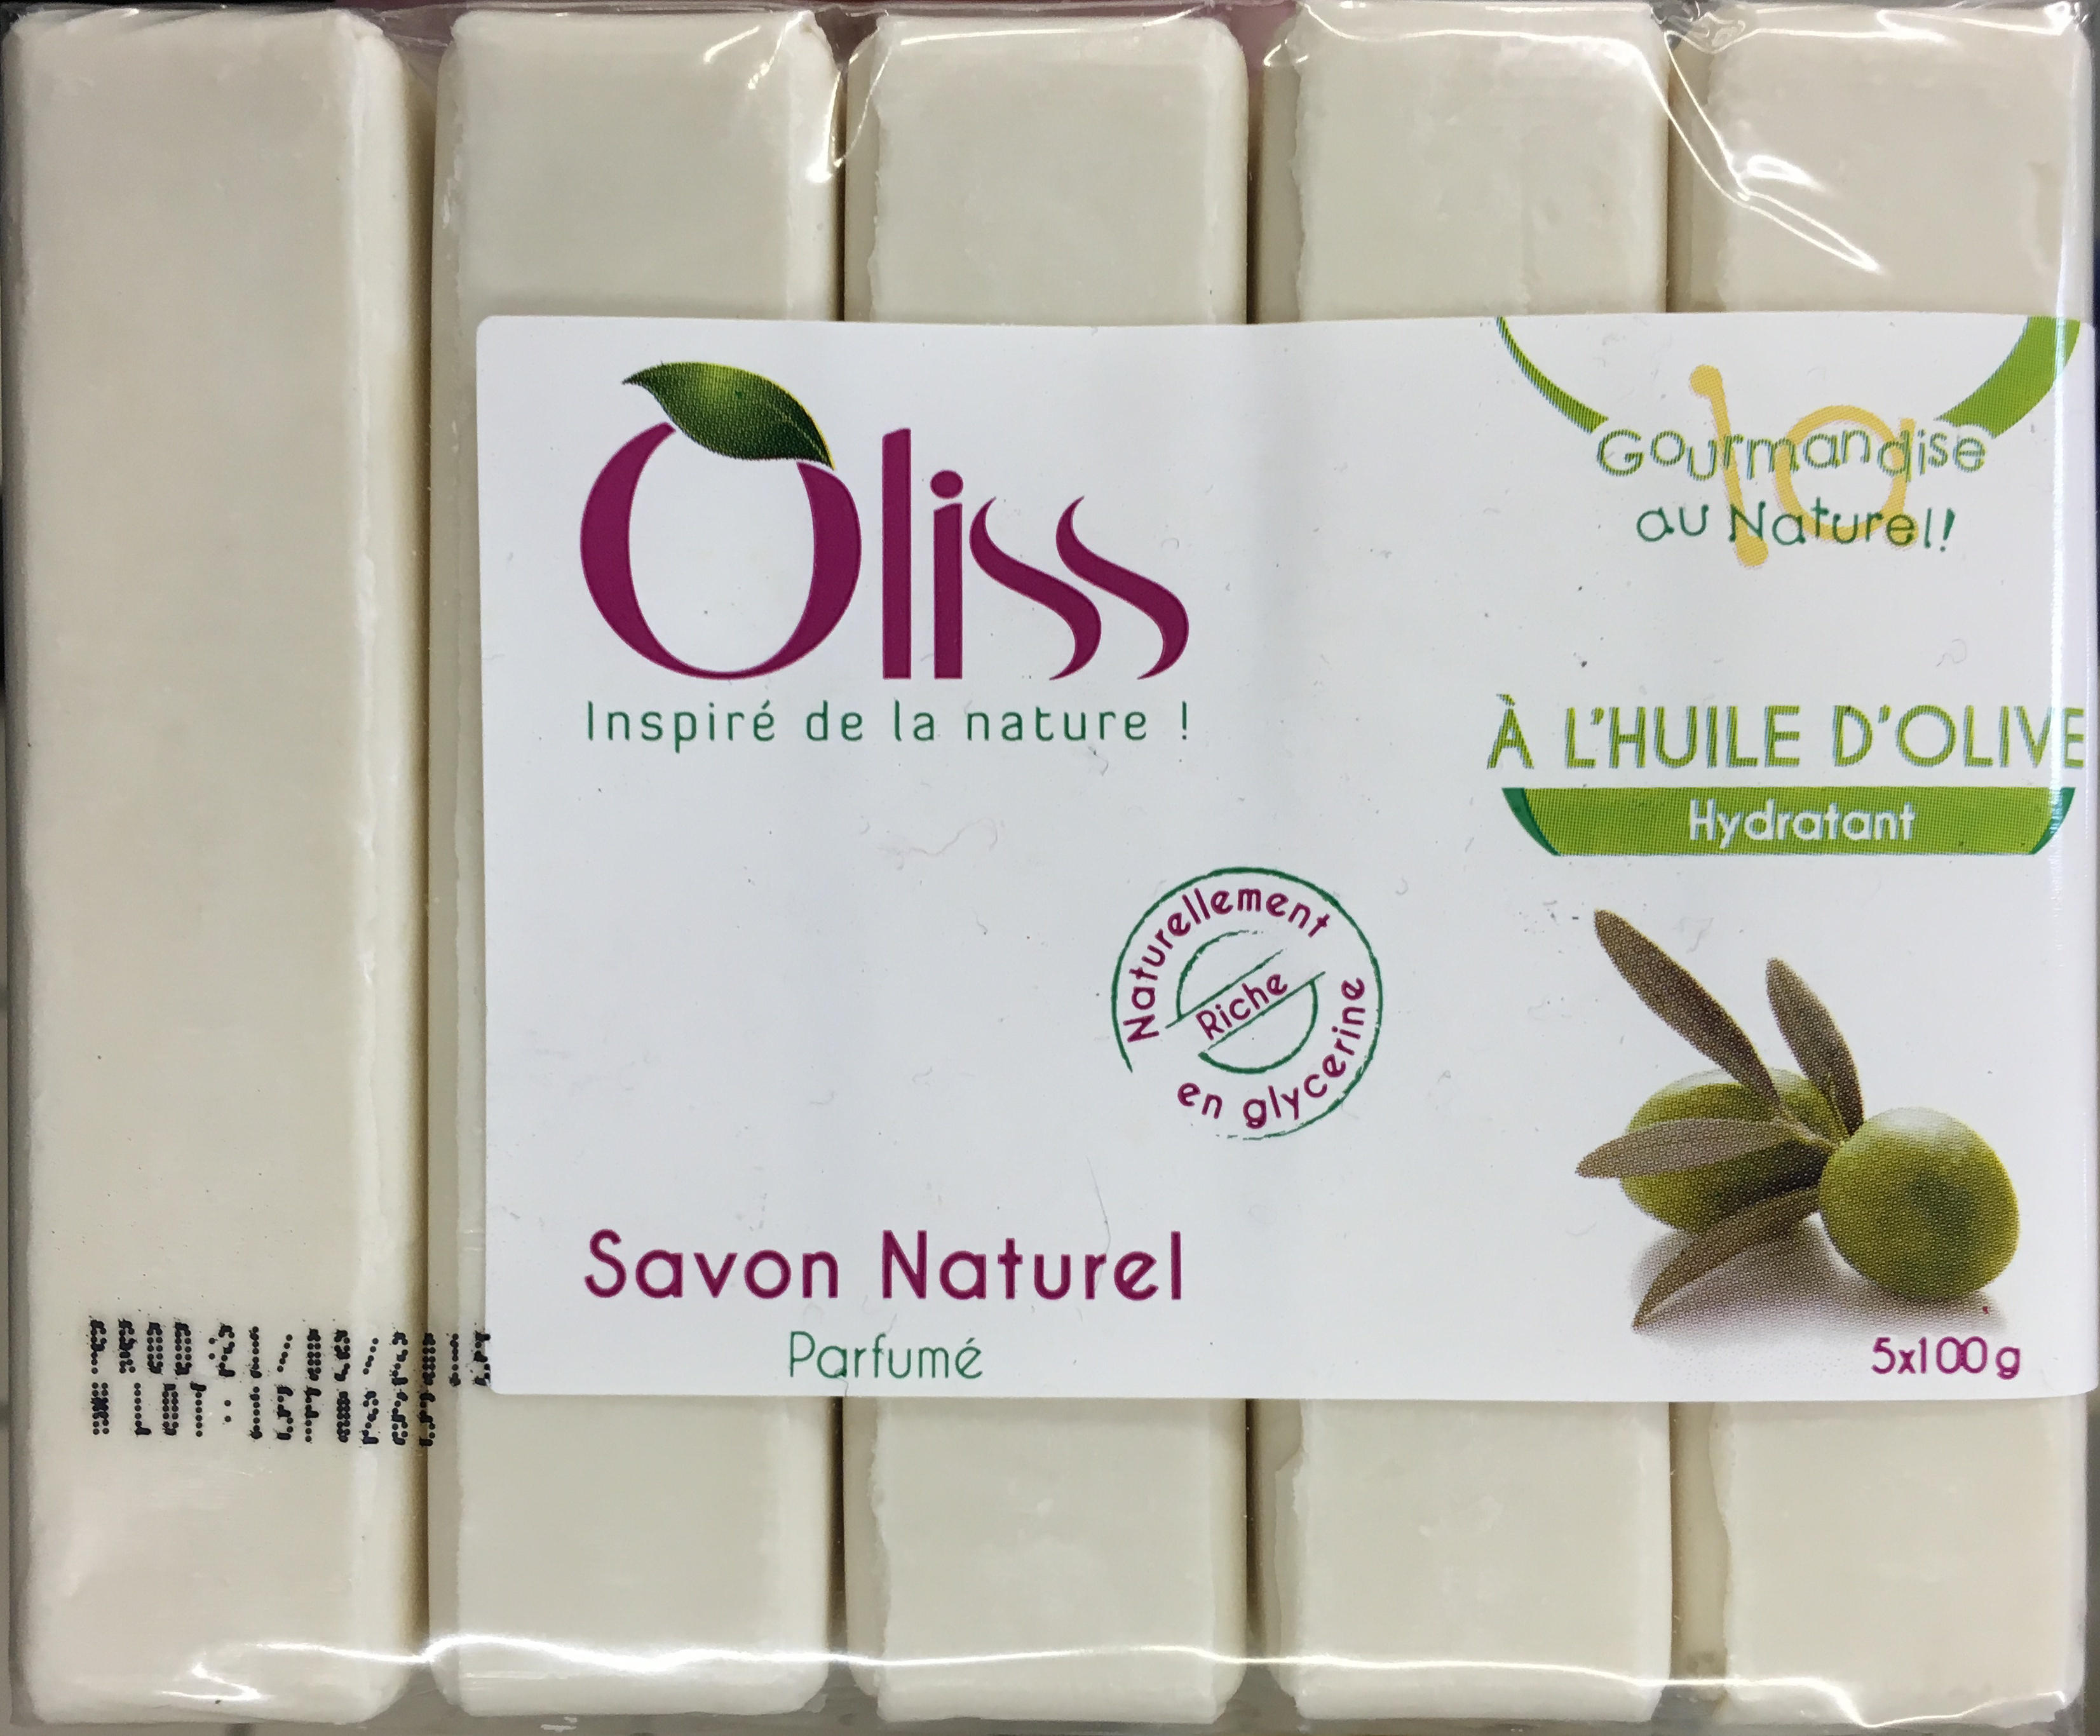 Savon naturel parfumé à l'huile d'olive - Product - fr